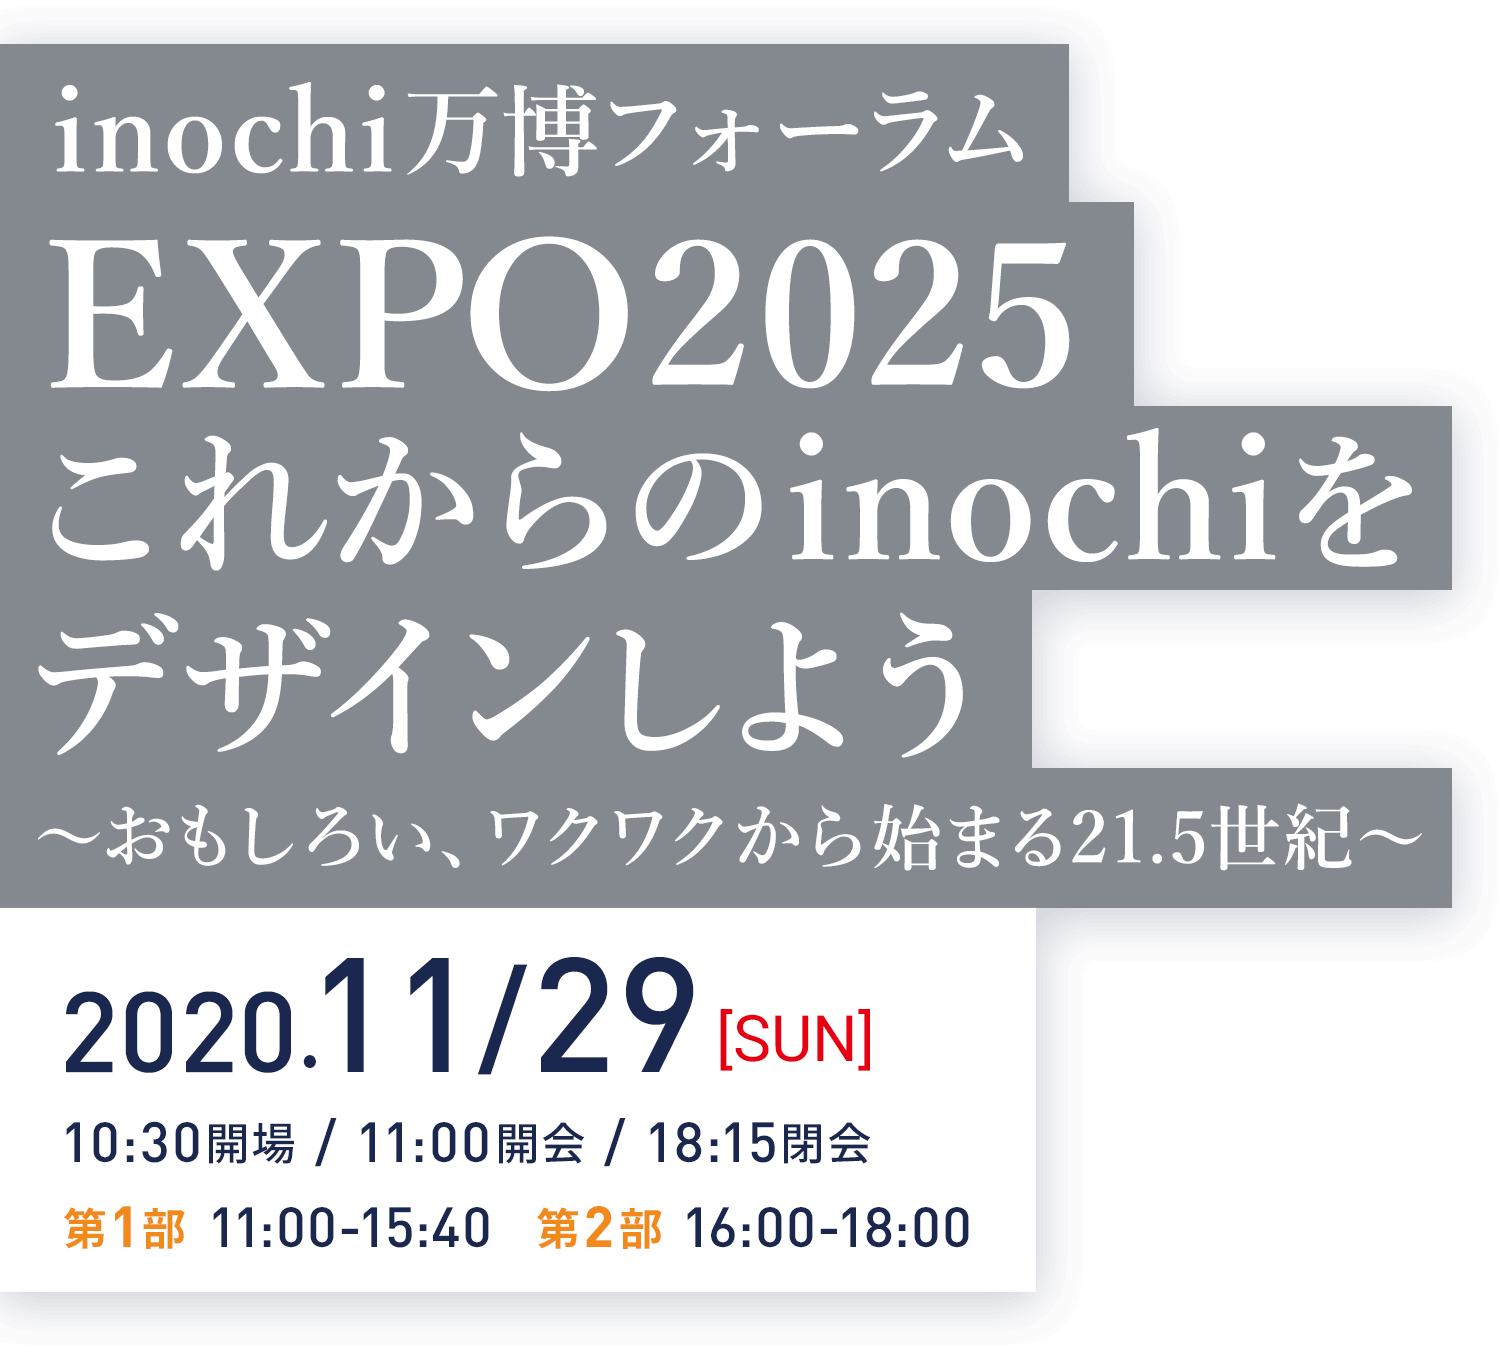 inochi万博フォーラム EXPO2025 これからのinochiをデザインしよう 〜おもしろい、ワクワクから始まる21.5世紀〜 2020.11/29（sun）